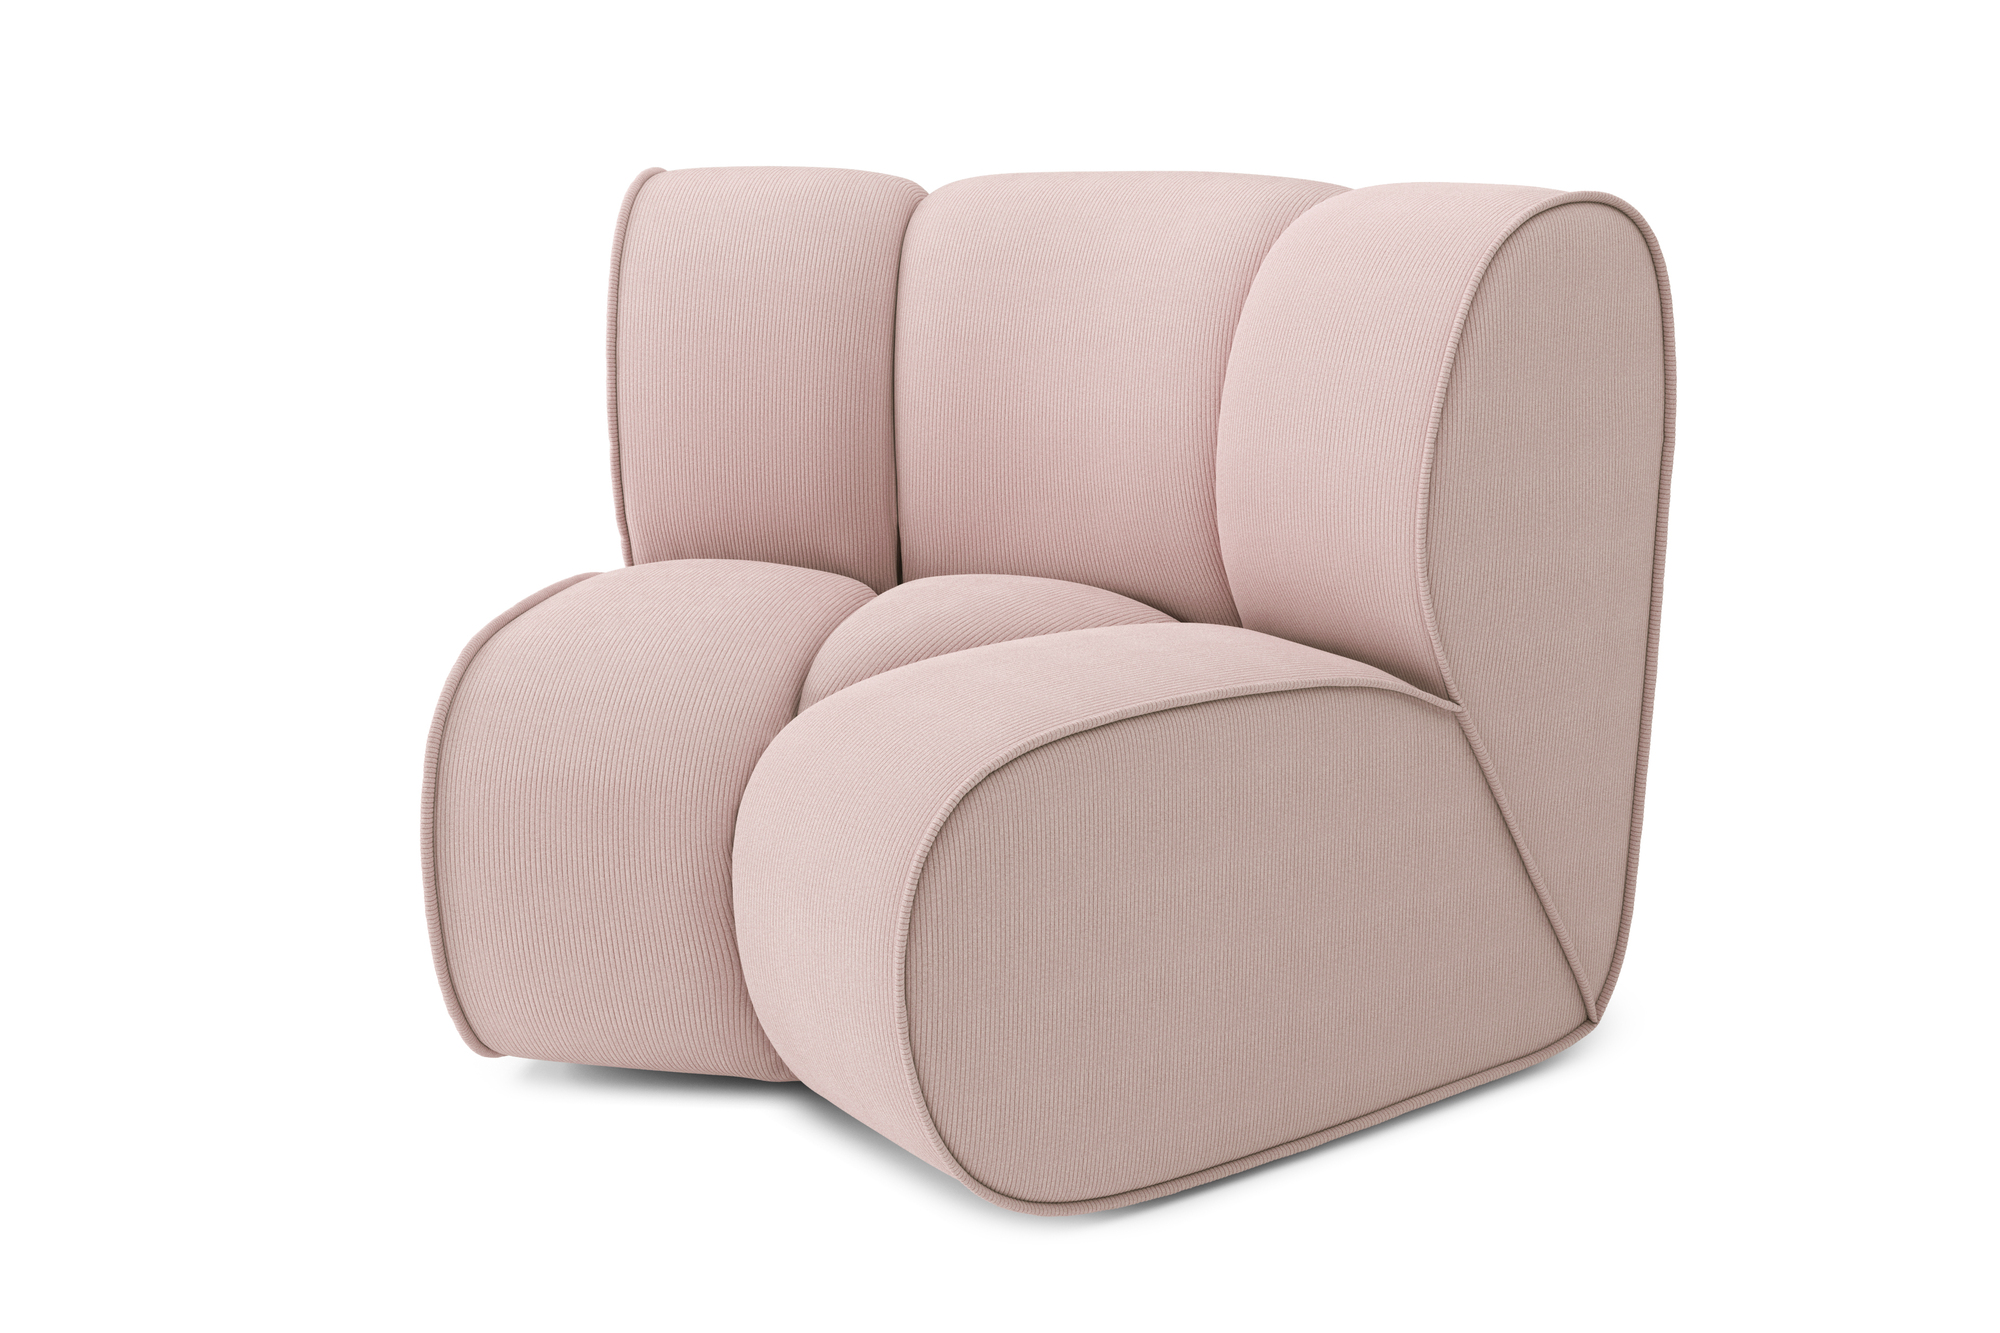 Canapé d'angle Rose Velours Design Confort